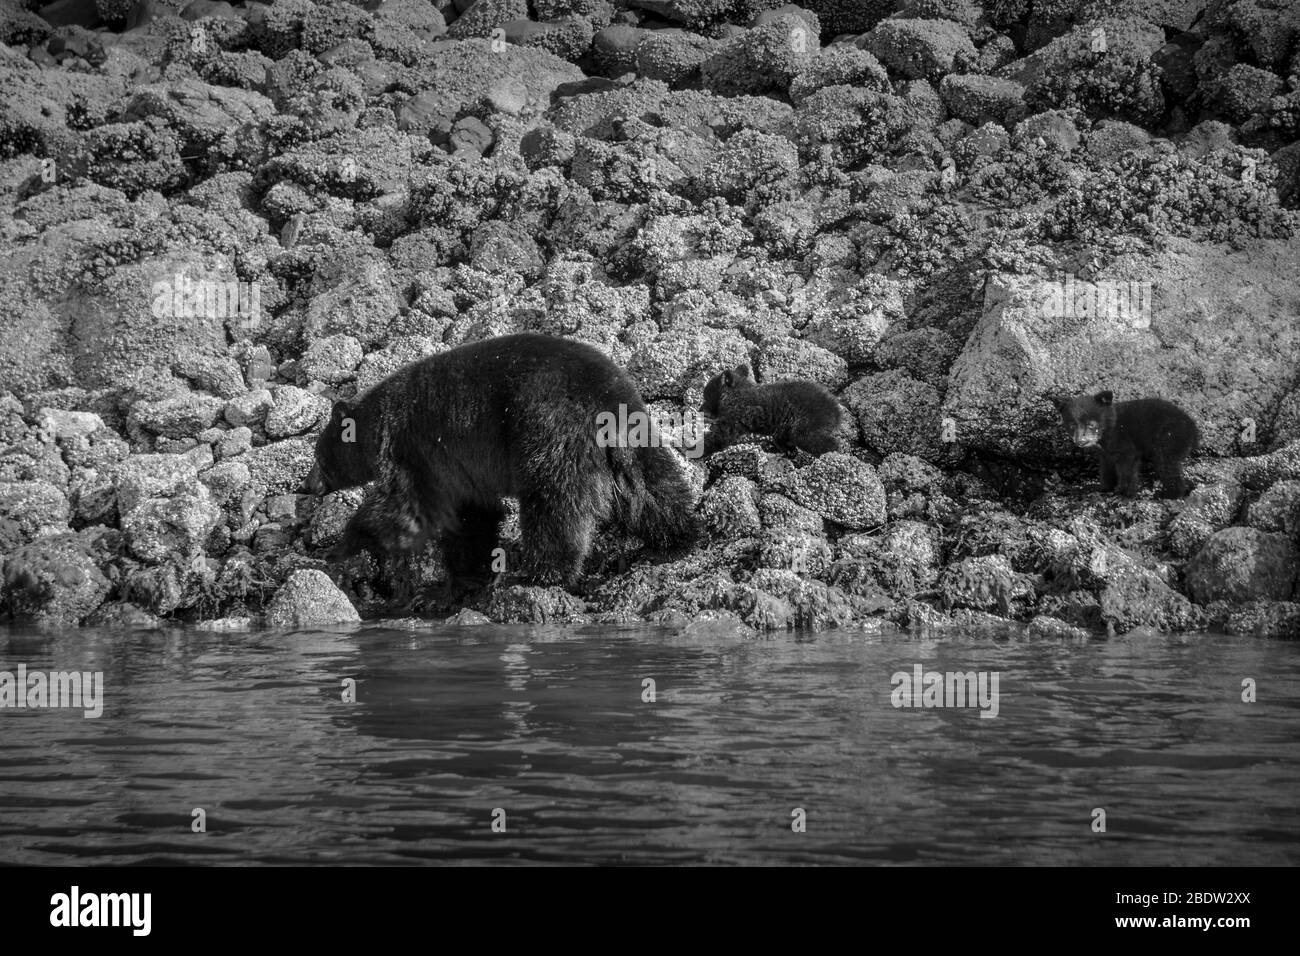 La costa più incredibile per vedere gli orsi neri vicino Tofino in Canada. Orsi alla ricerca di cibo durante la bassa marea. Foto Stock